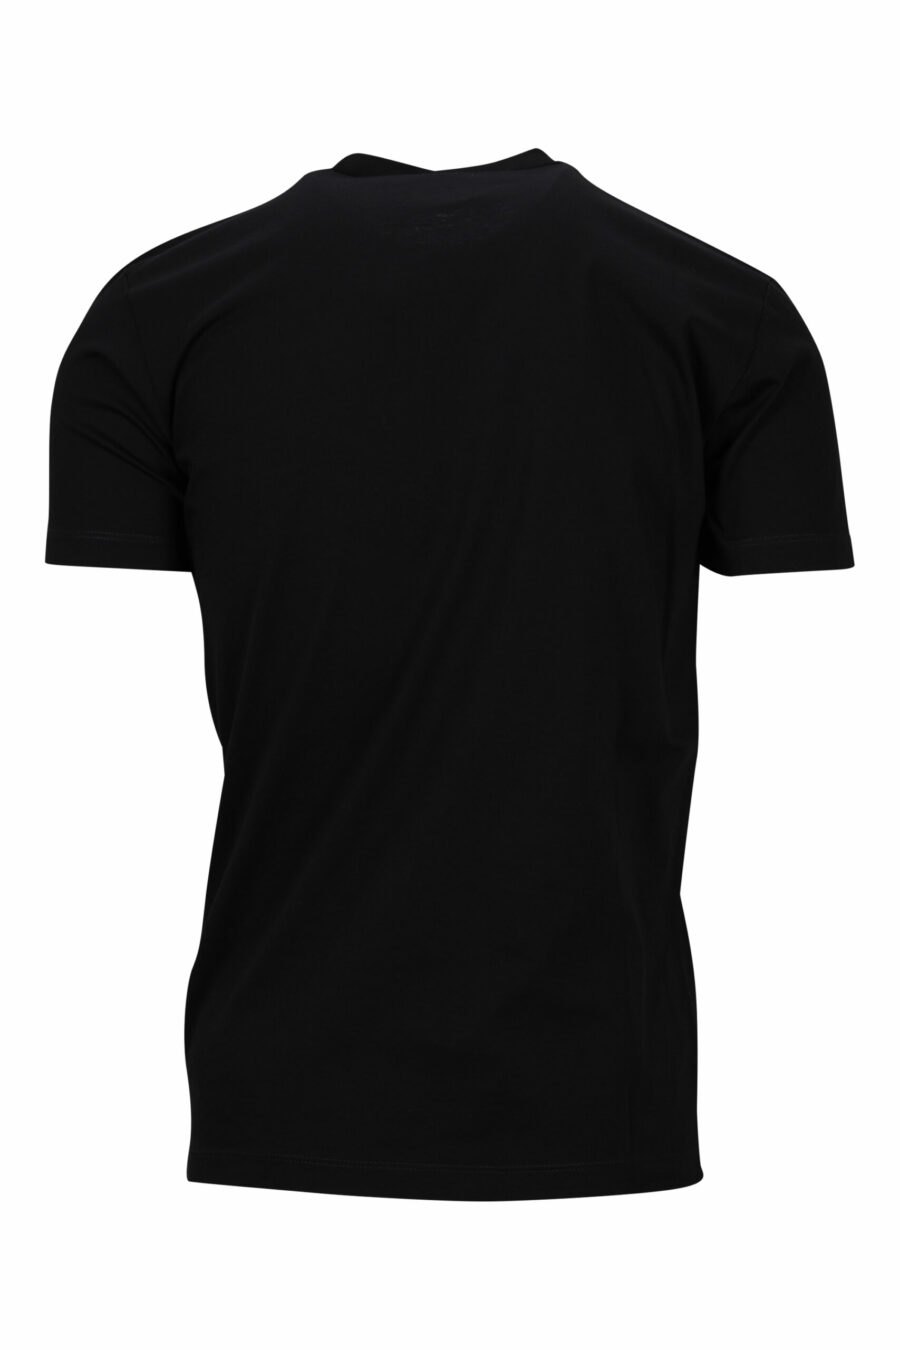 Schwarzes T-Shirt mit neongrünem unscharfem "Icon" Maxilogo - 8054148359126 1 skaliert